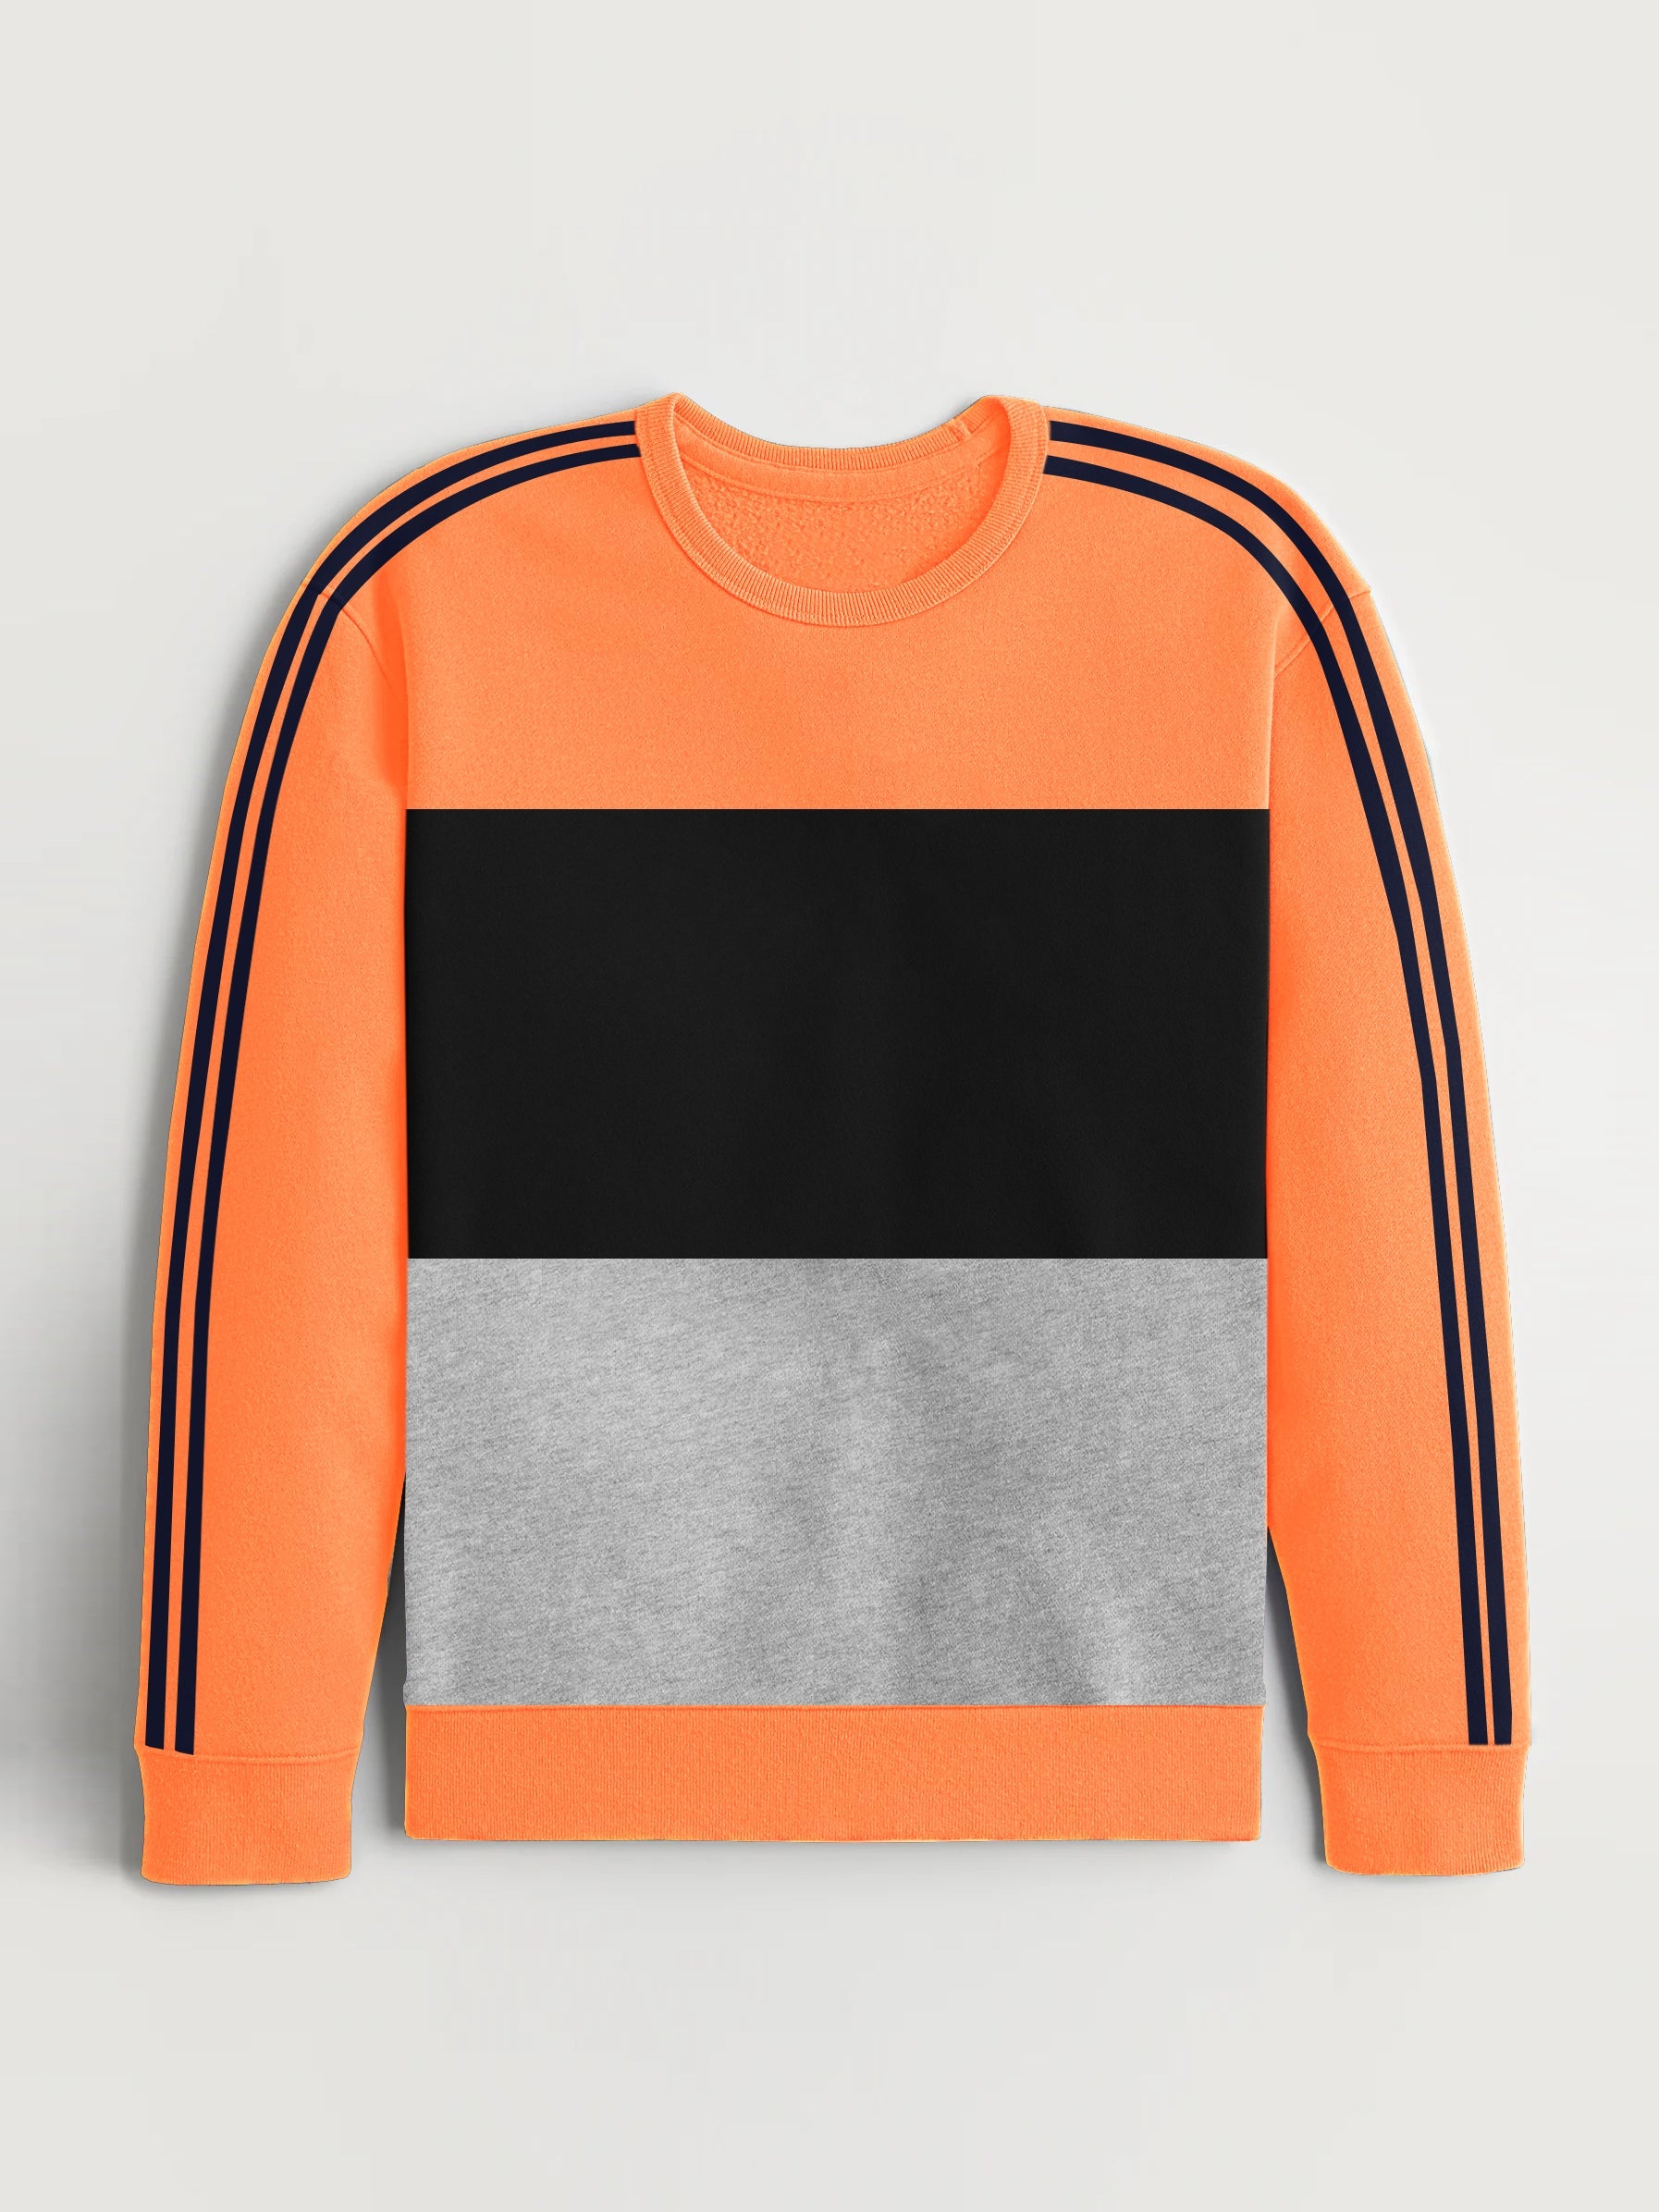 Premium Quality Crew Neck Fleece Sweatshirt For Men-Orange With Navy Stripes-RT1556